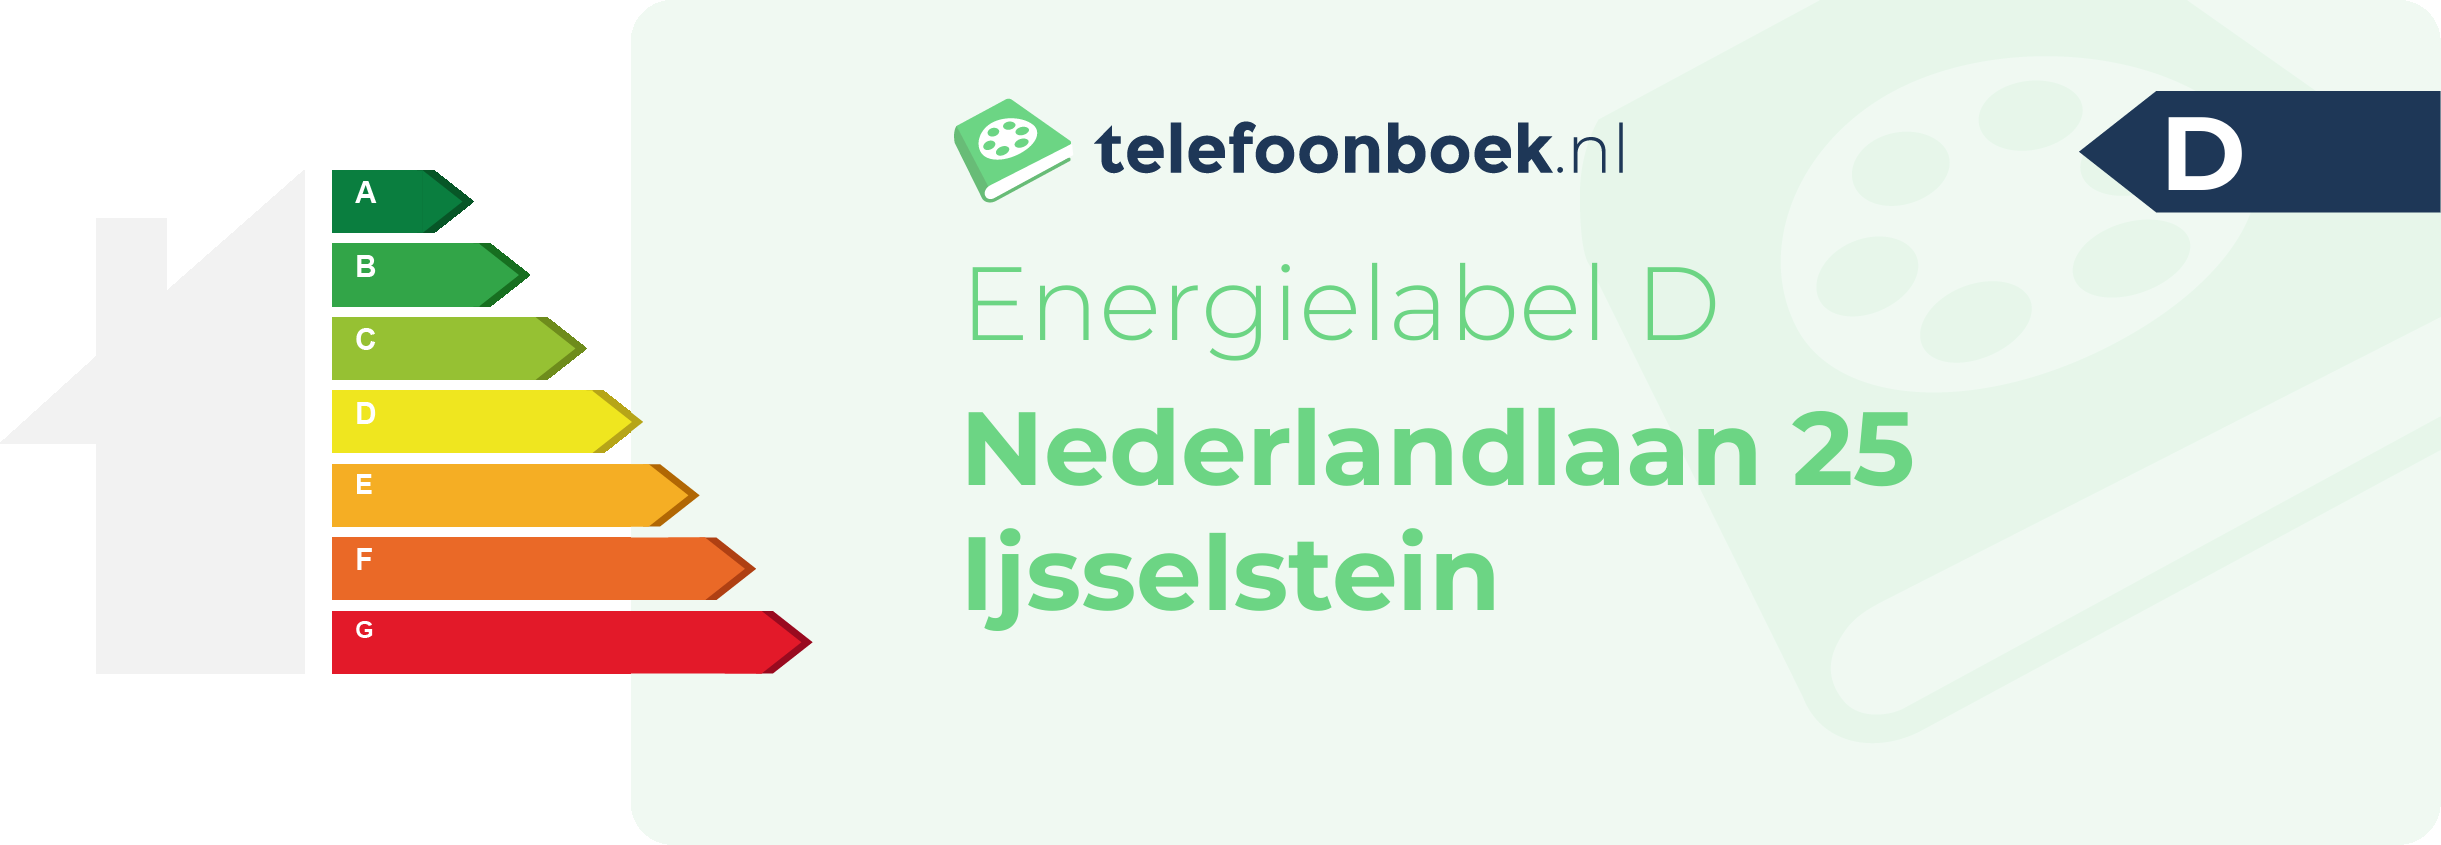 Energielabel Nederlandlaan 25 Ijsselstein